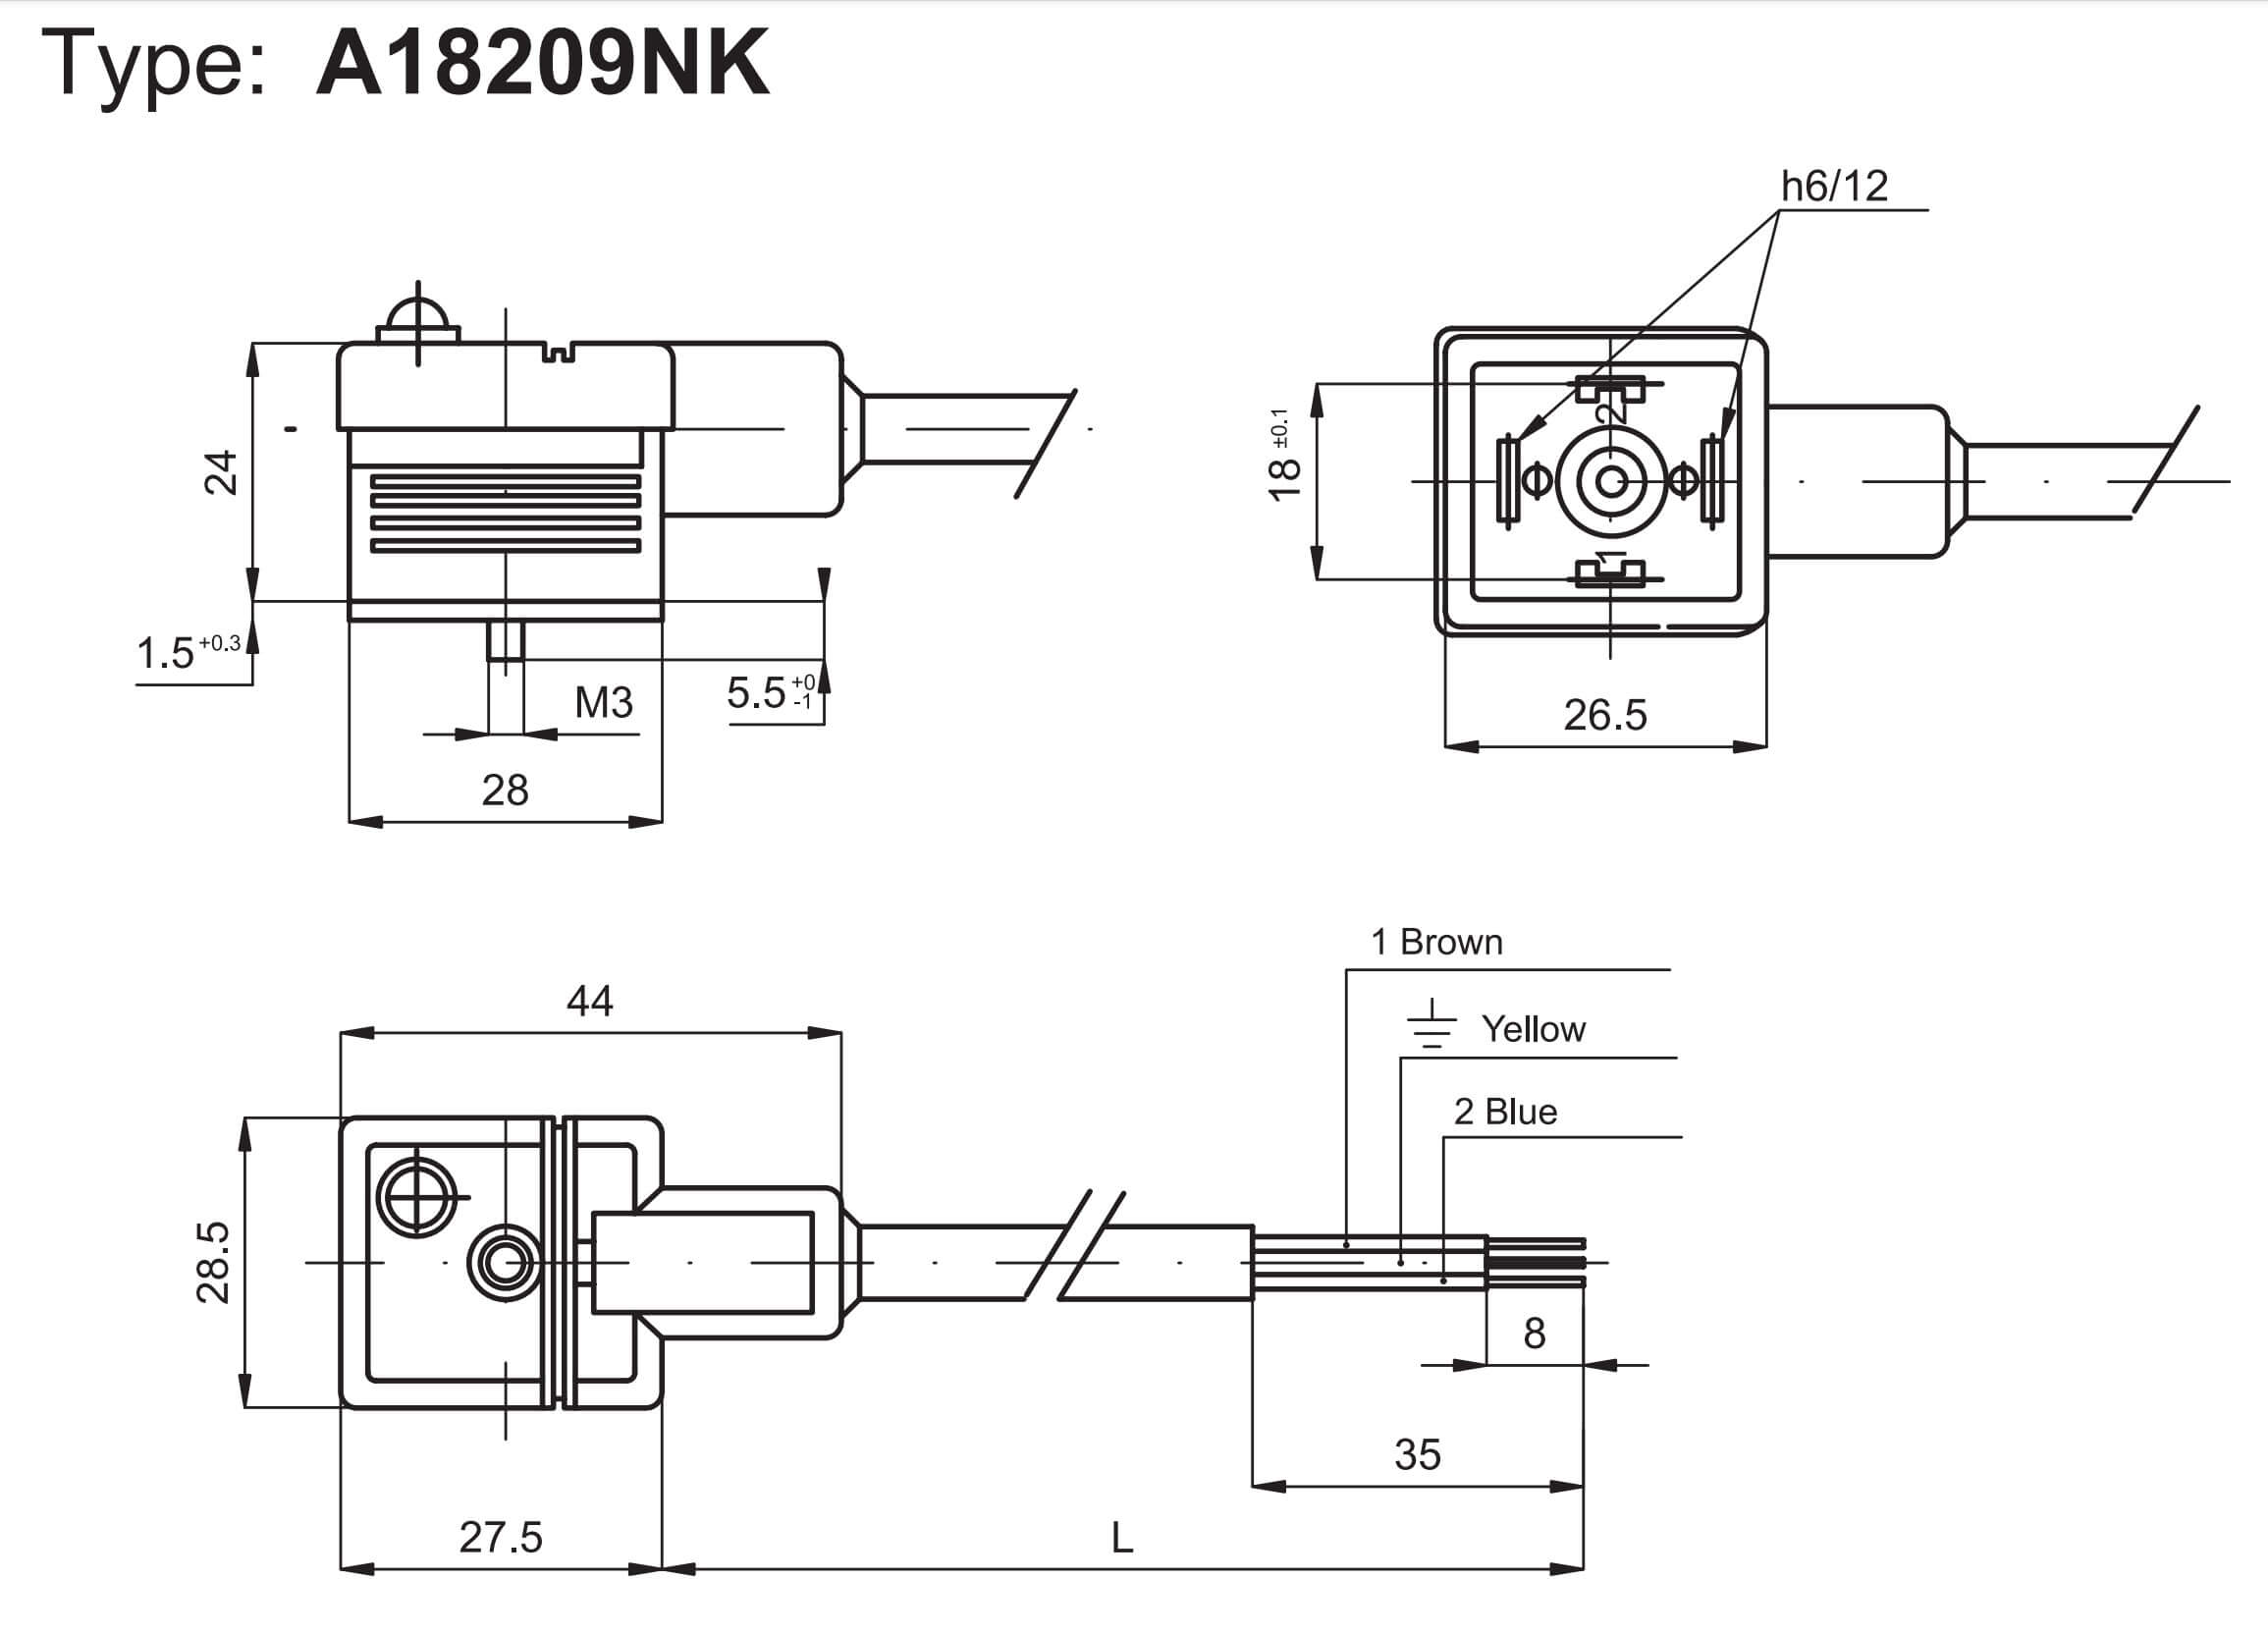 Technický výkres konektoru A18209NK k cívkám ASA2 pro velikosti ISO1 a ISO2